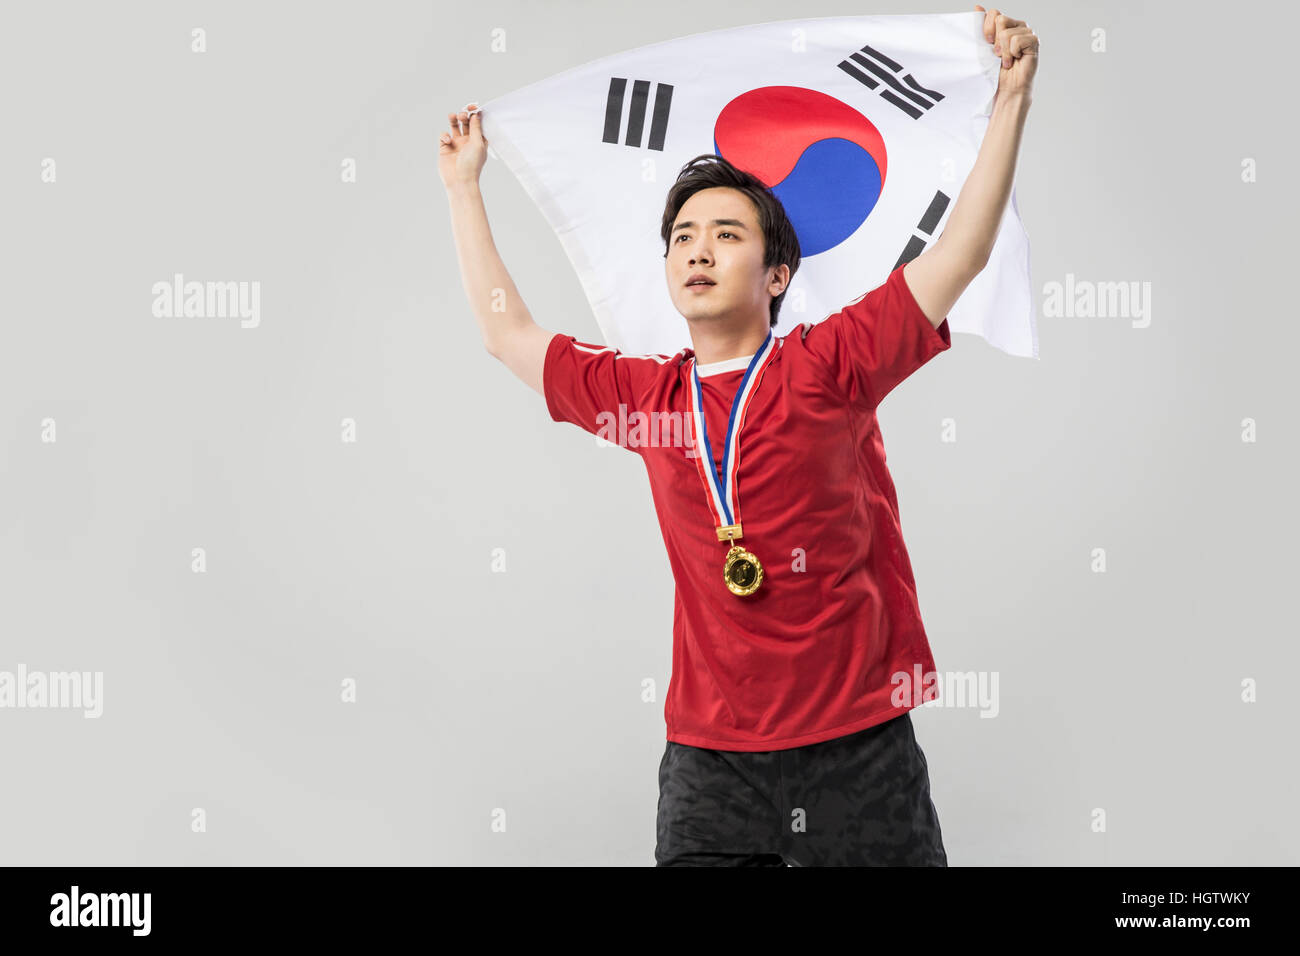 Männliche junge koreanische Sport Player mit Goldmedaille posiert mit koreanische Flagge Stockfoto